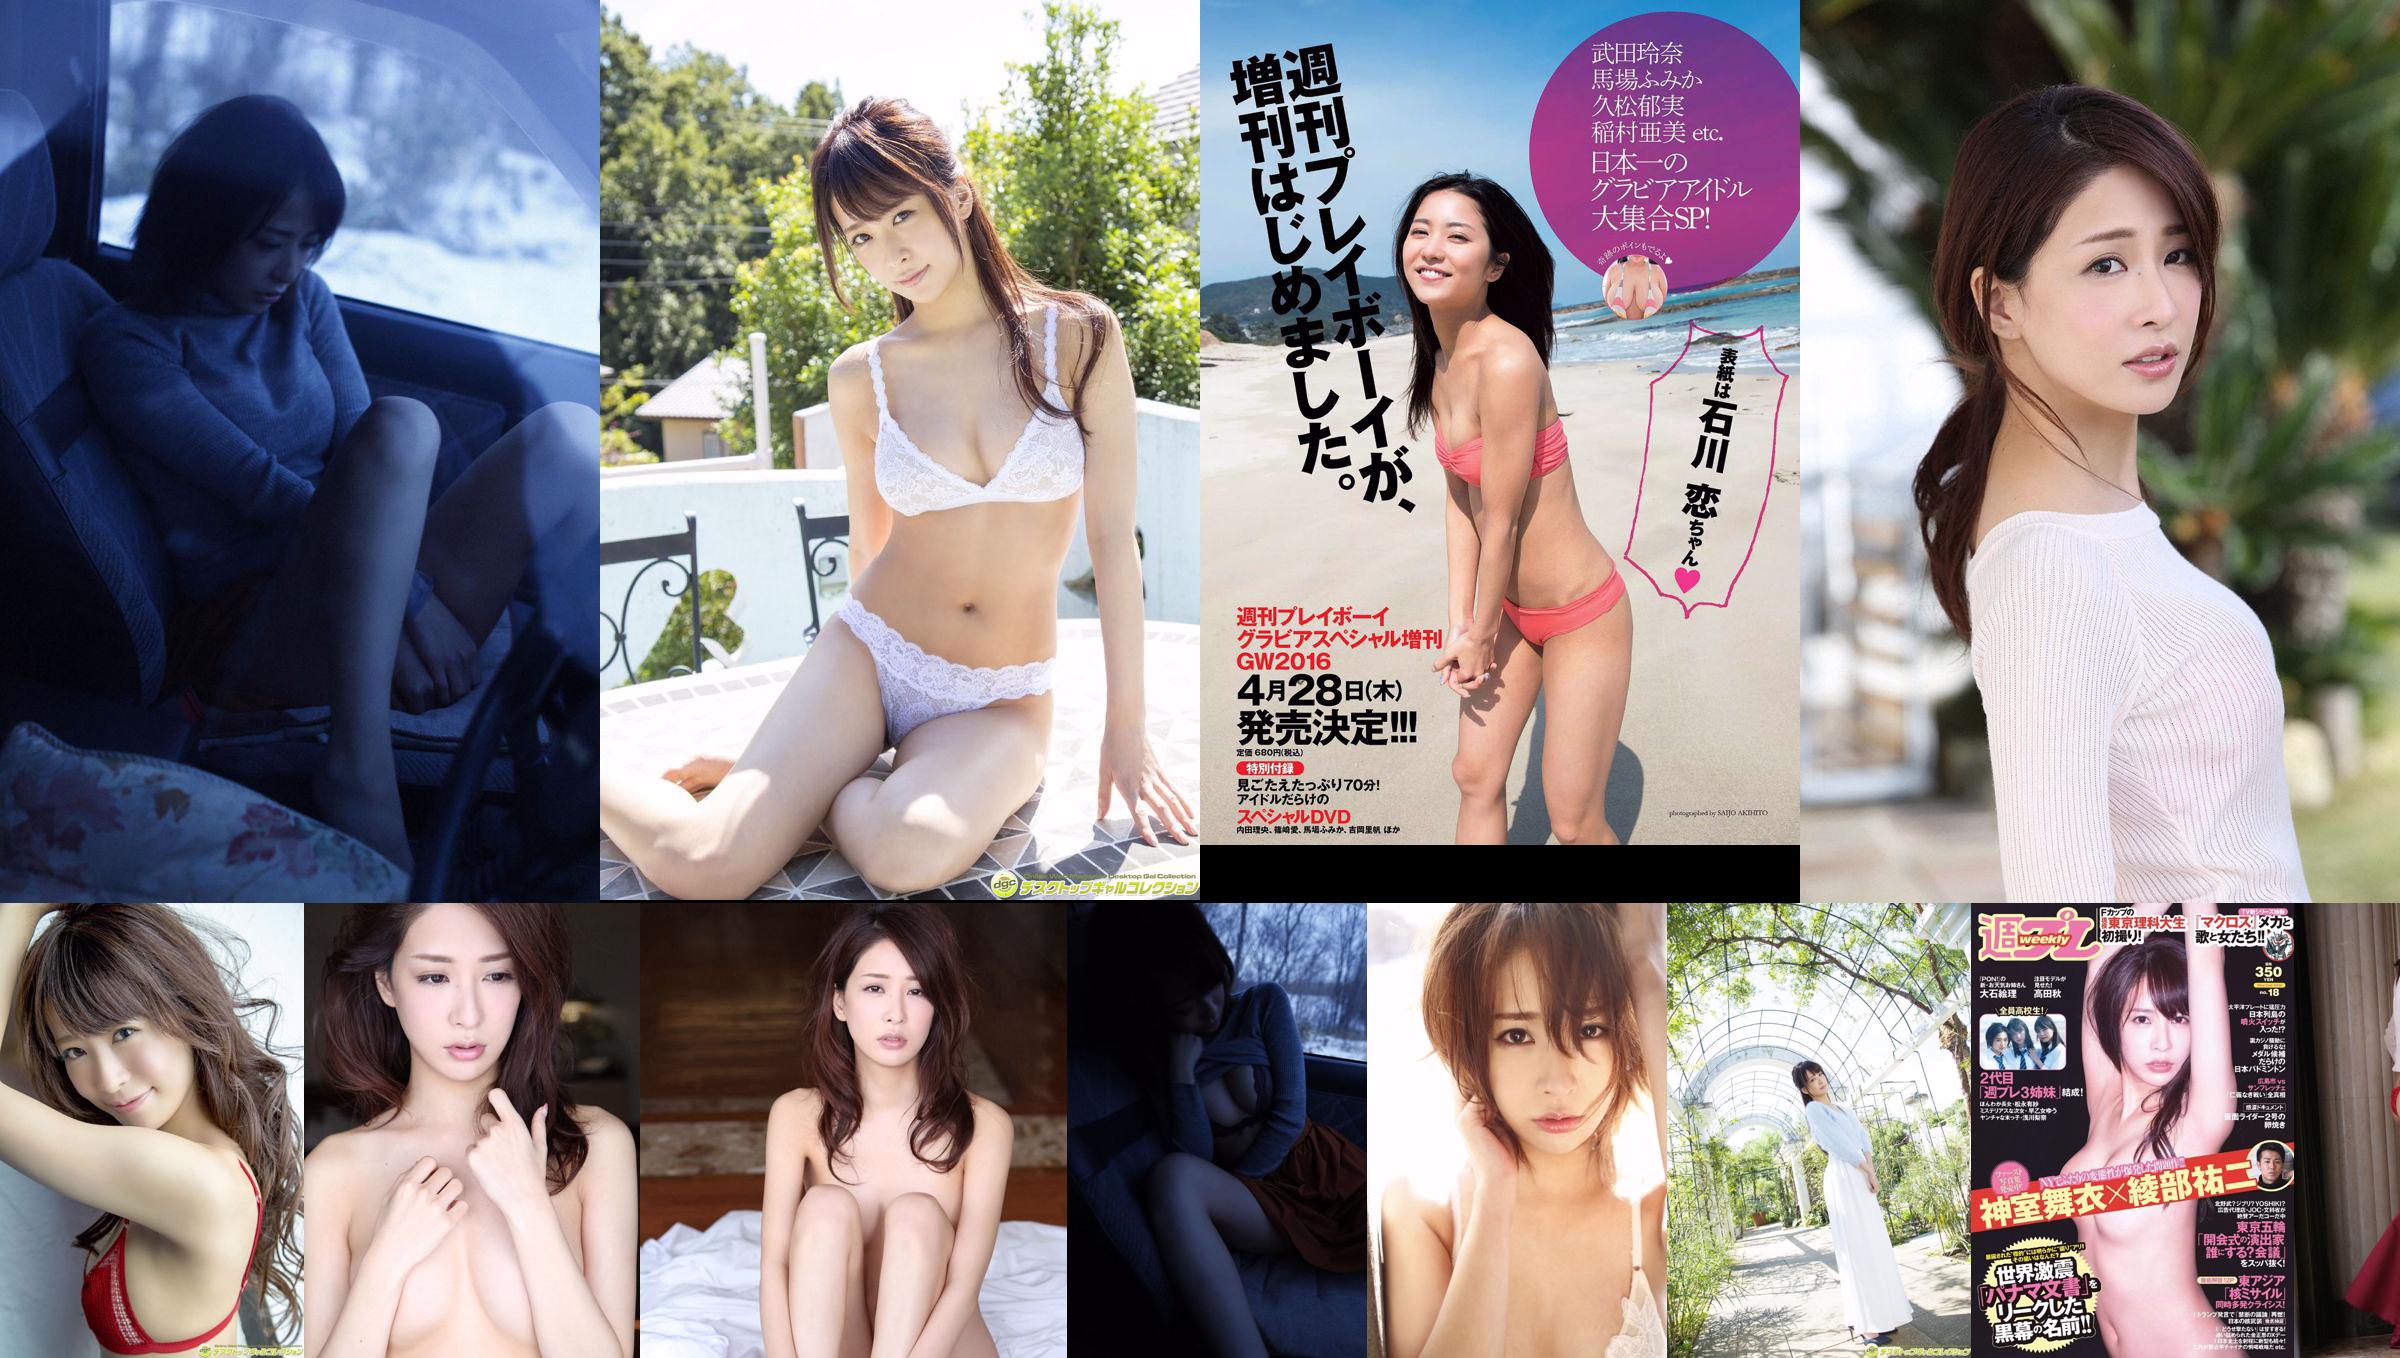 Mai Kamuro Arisa Matsunaga Yu Saotome Rina Asakawa Shu Takada Ayana Takeda Eri Oishi [Playboy semanal] 2016 No.18 Fotografía No.0b8588 Página 1